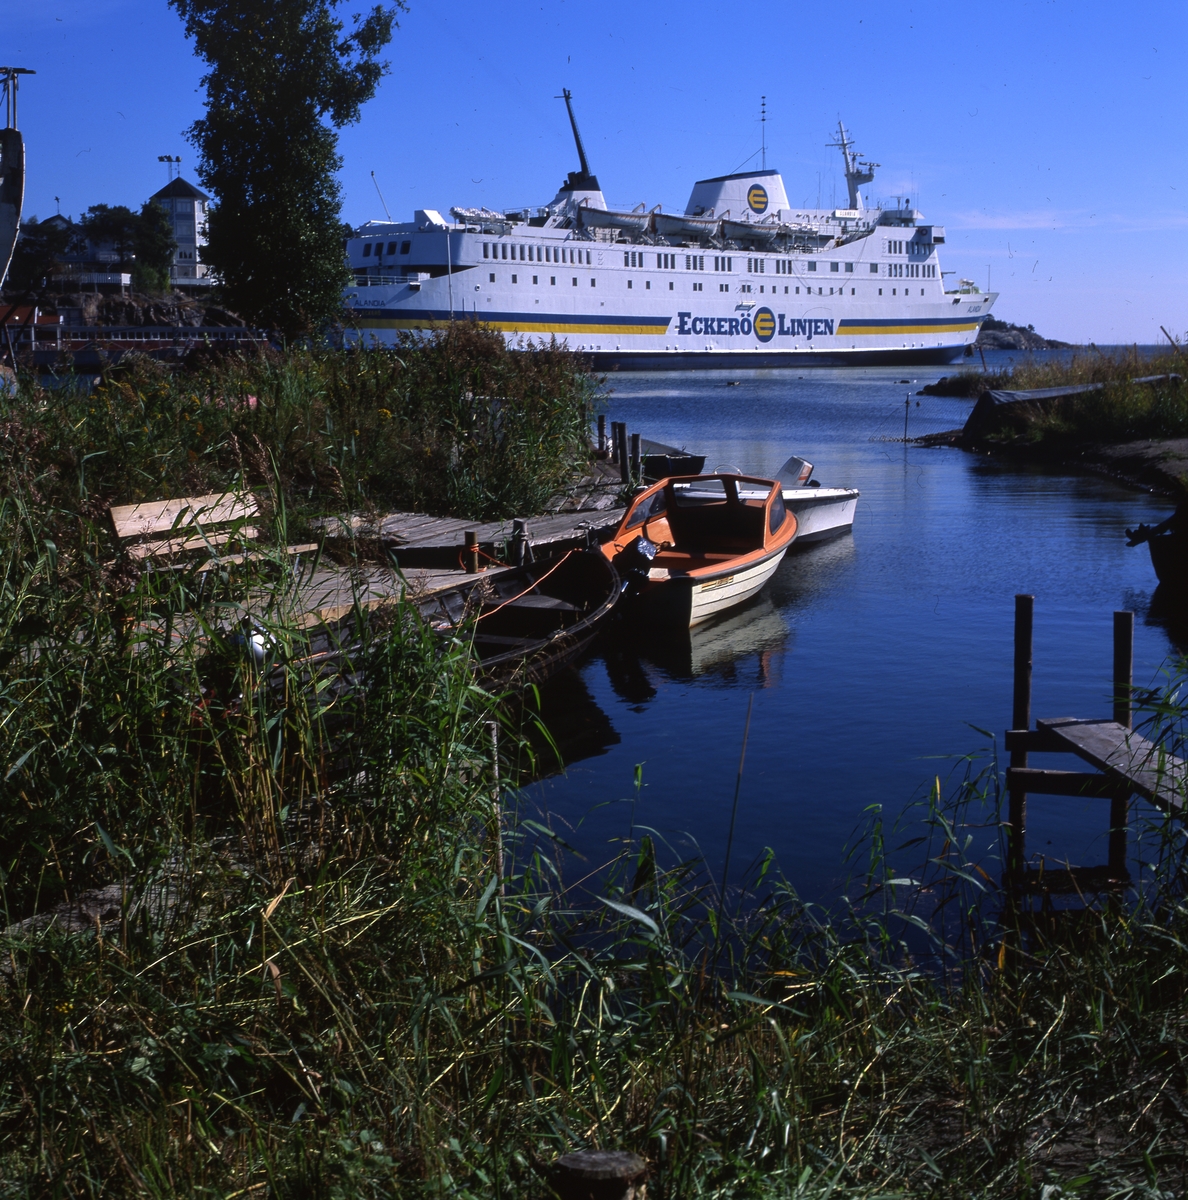 Fogdö, en ö i norra Roslagen, 2-3 september 1999.  Här ser vi färjan, några båtar vid en brygga och byggnader i bakgrunden.